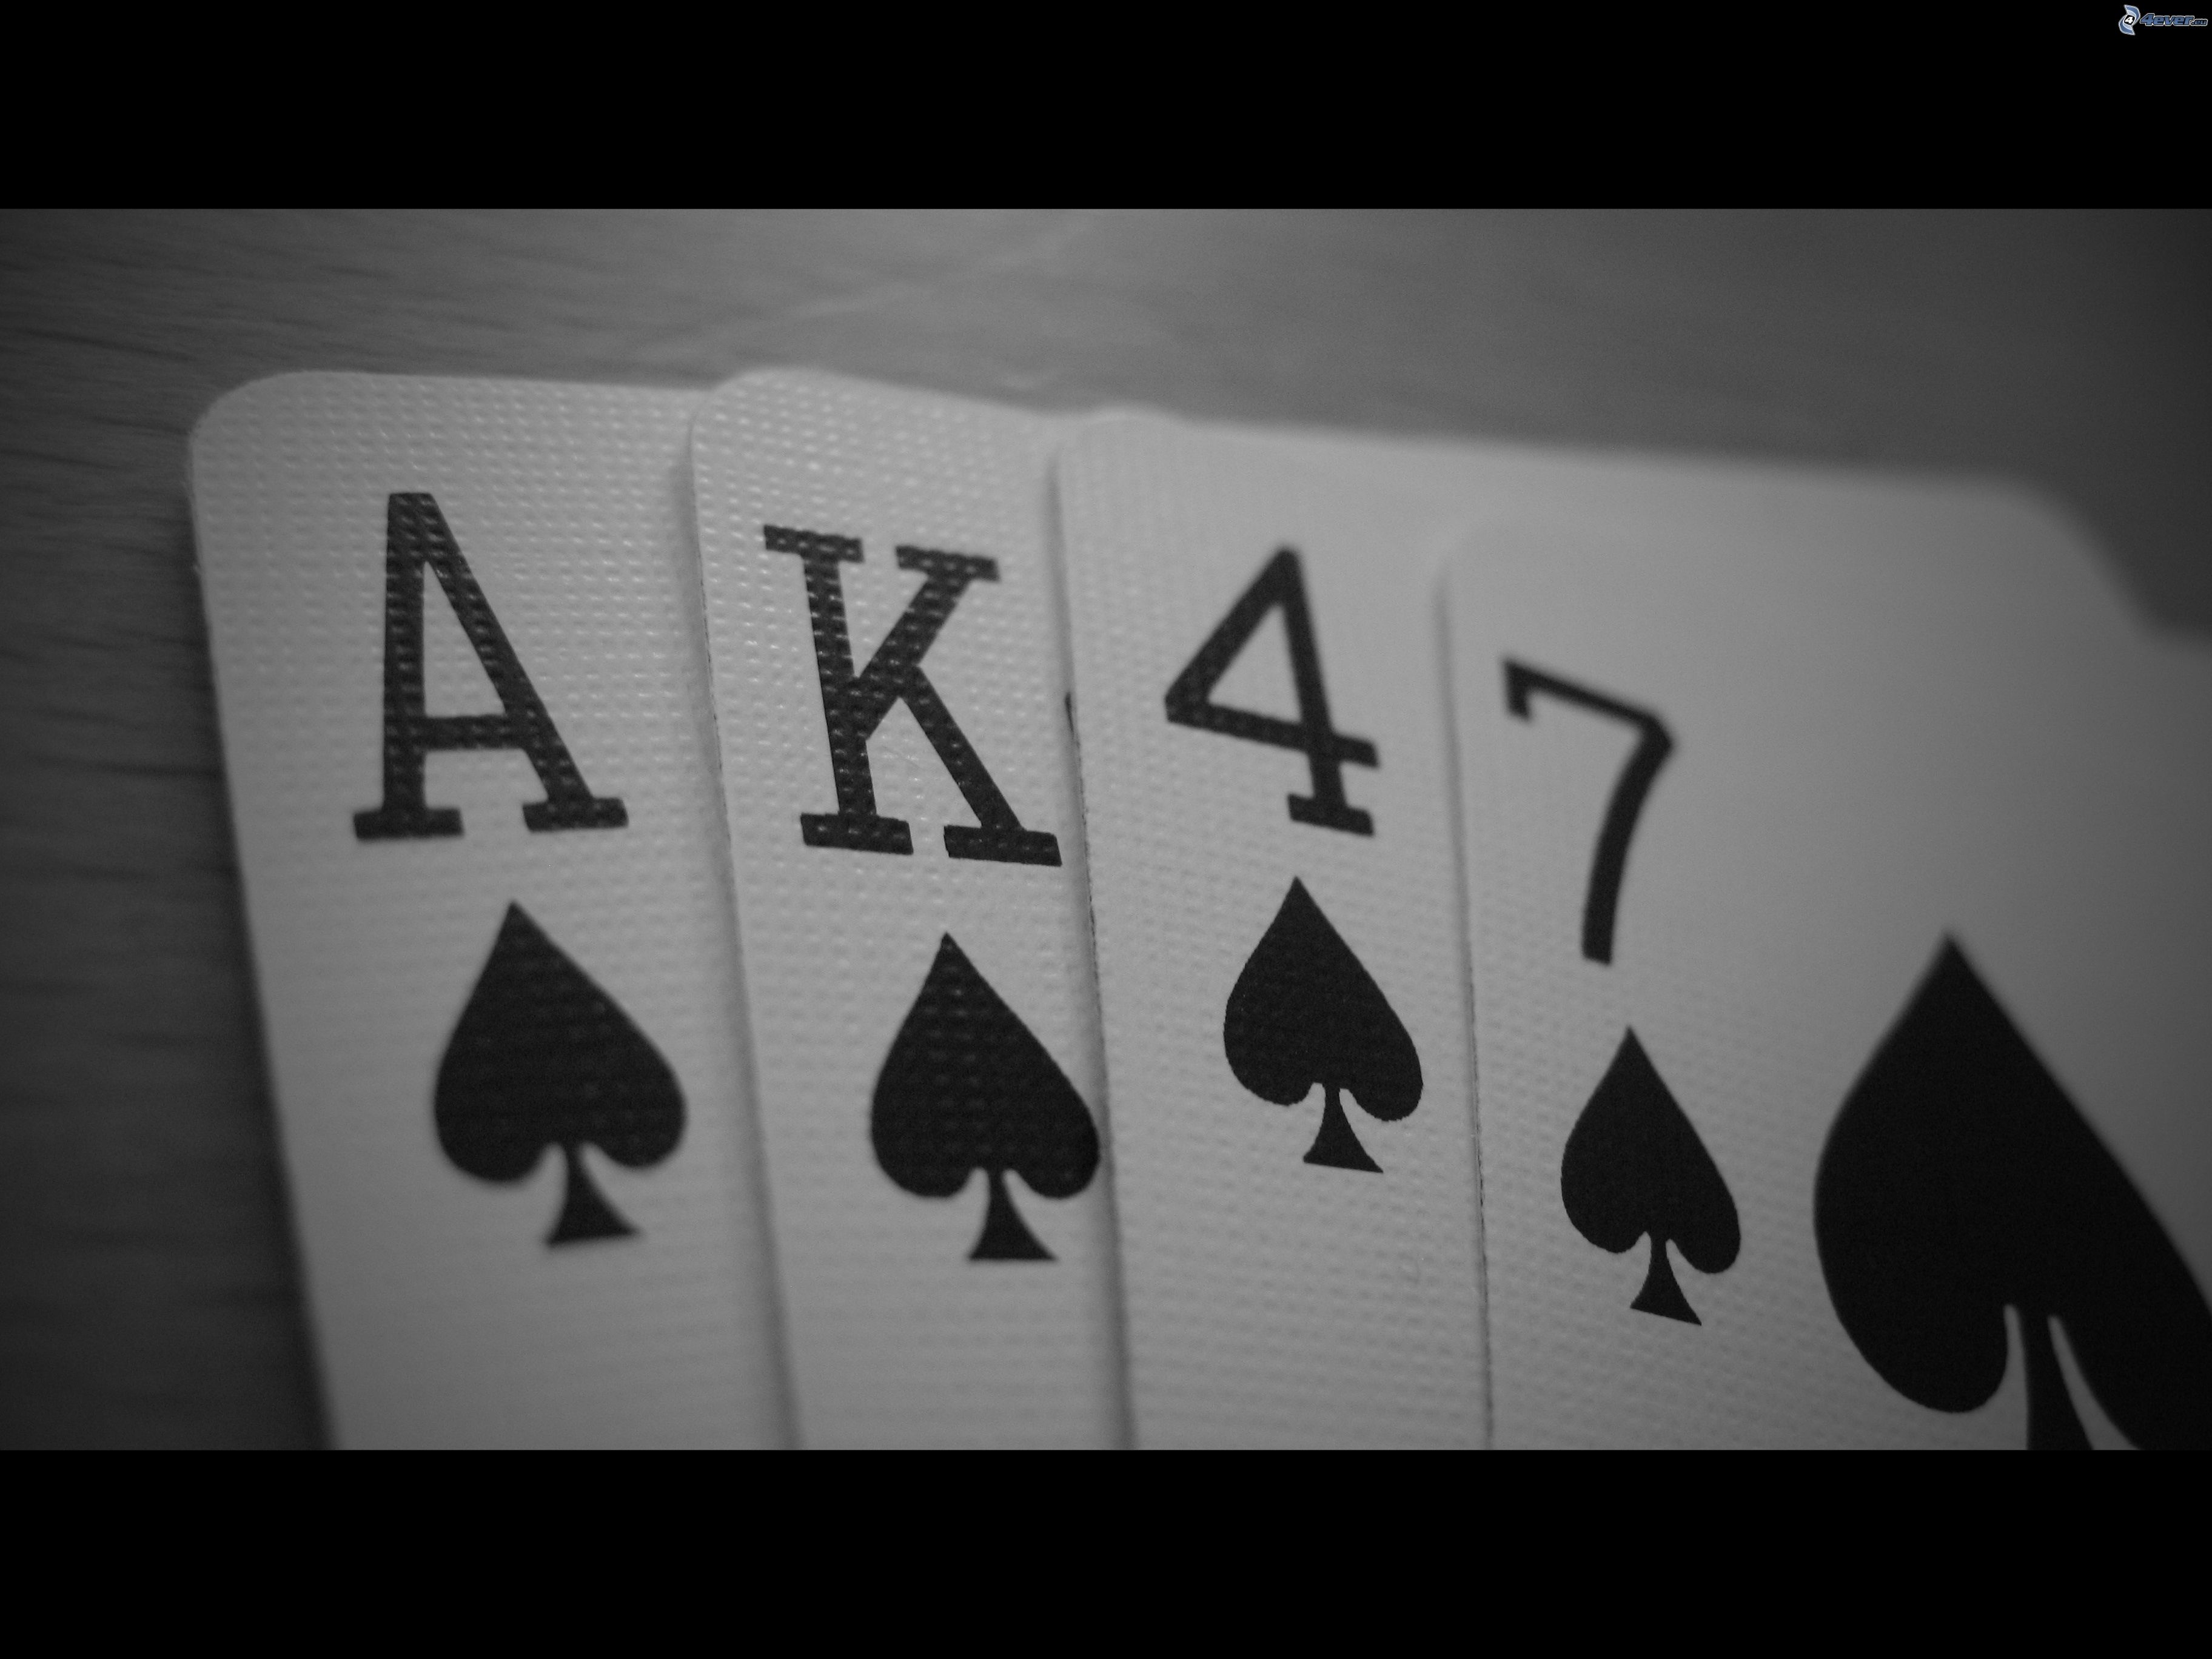 cards,-ak-47-183143.jpg